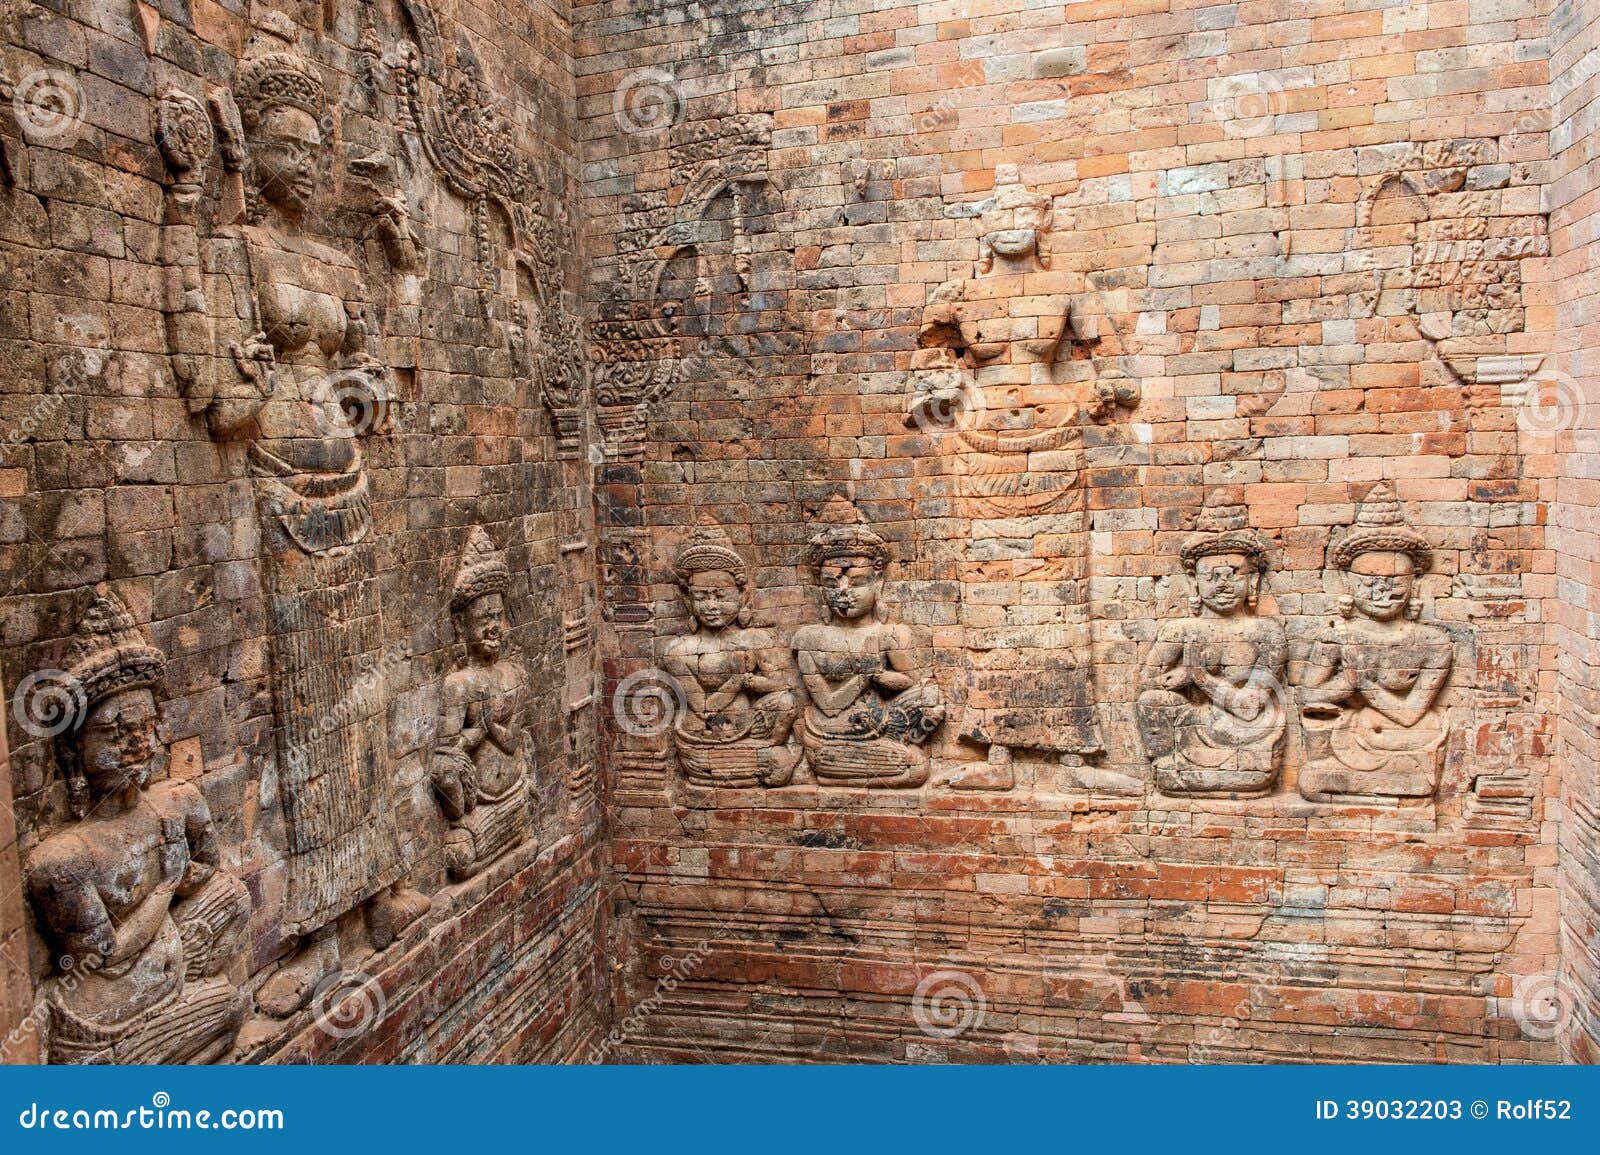 reliefs at prasat kravan in cambodia